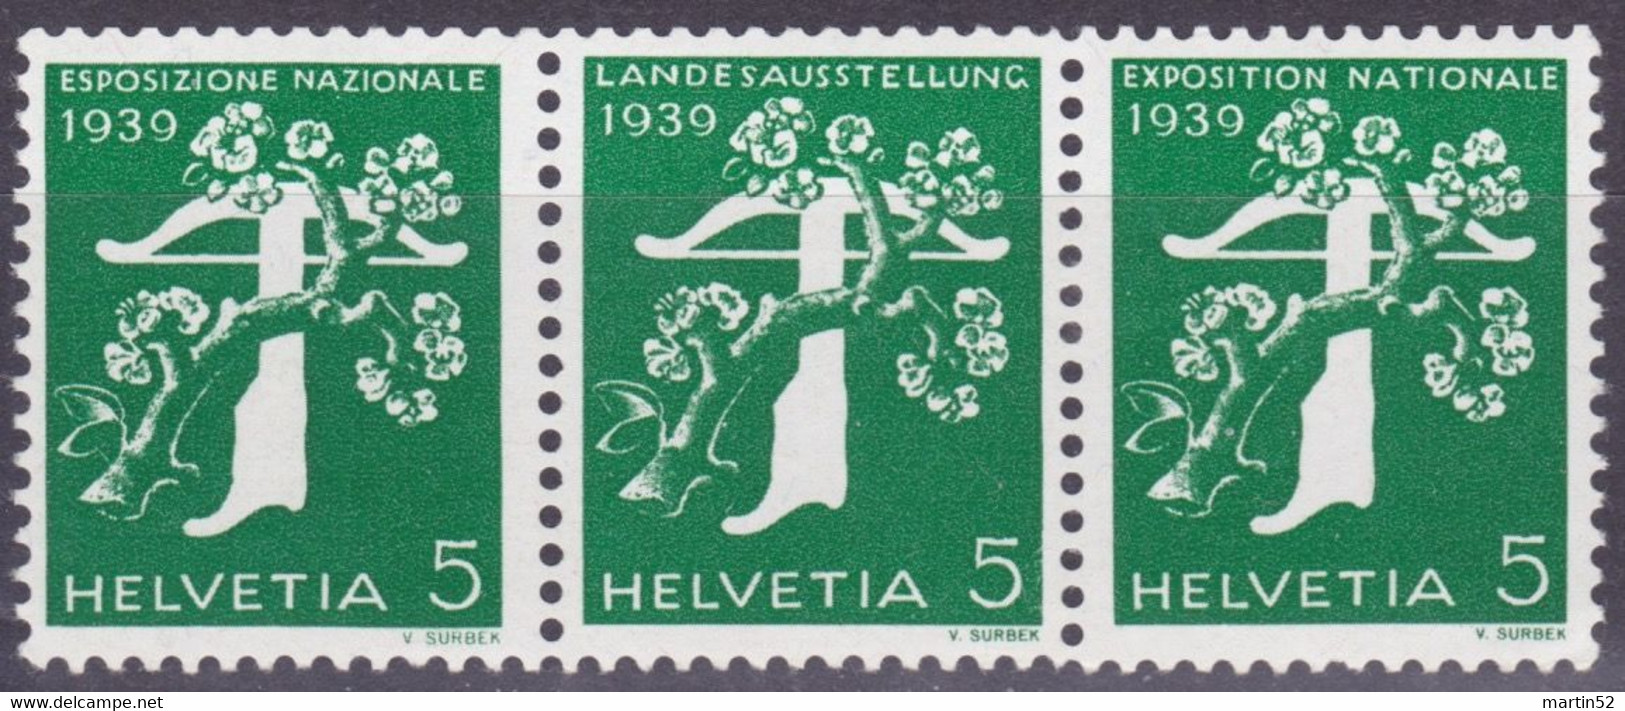 Schweiz Suisse 1939: Zusammendruck Se-tenant Zu Z25c Mi W12 ** Mit Nr. Avec N° L7295 Postfrisch MNH (Zumstein CHF 21.00) - Rollen